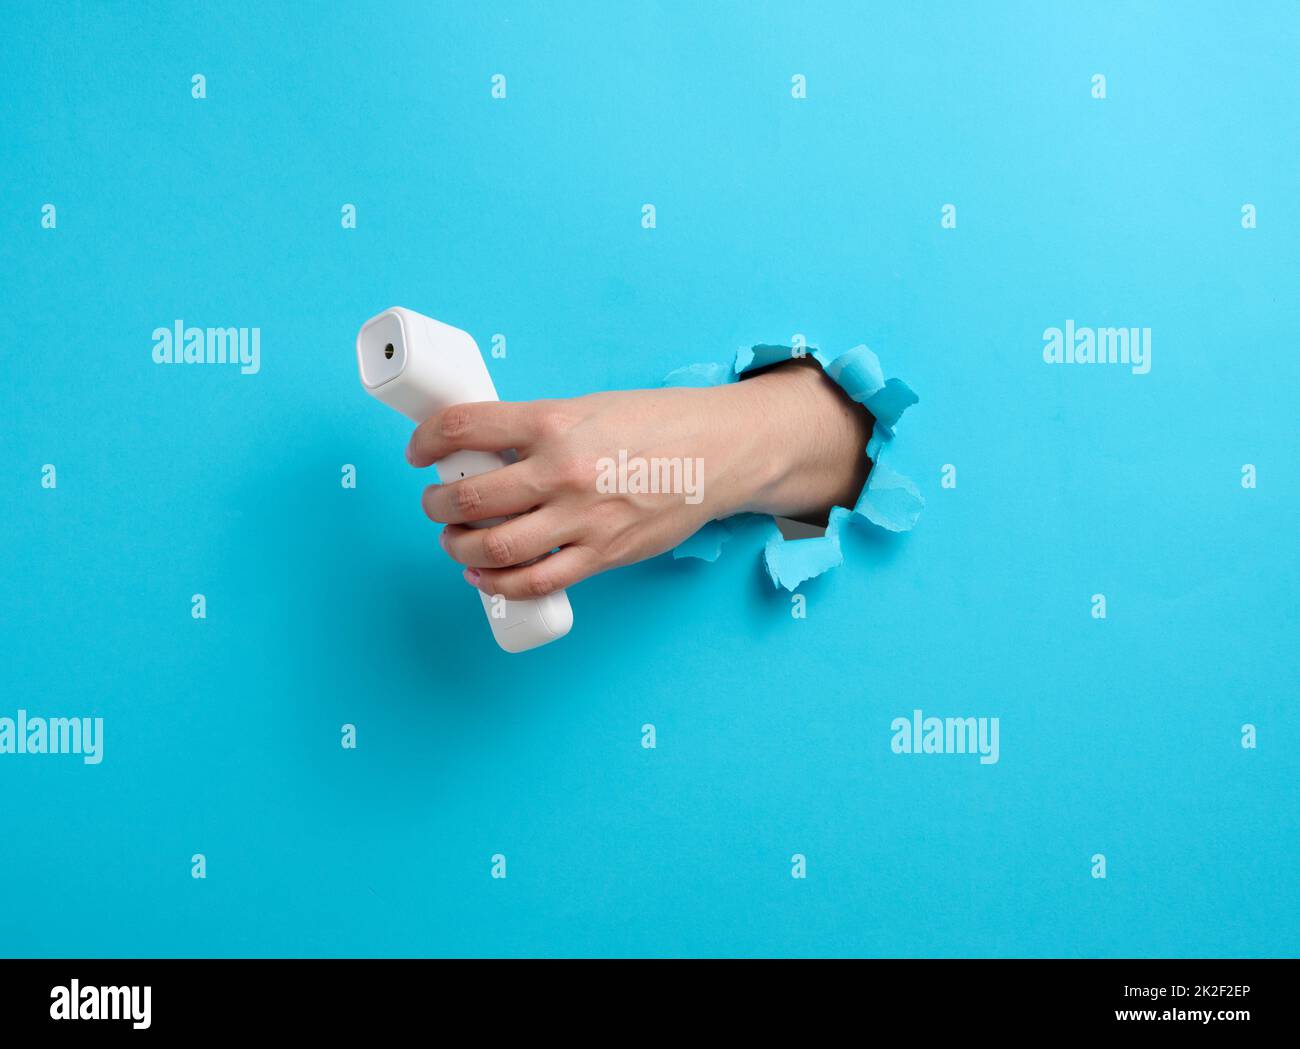 una mano femmina tiene un termometro in plastica senza contatto per misurare la temperatura di una persona, una parte del corpo sporge da un foro lacerato su uno sfondo di carta blu Foto Stock